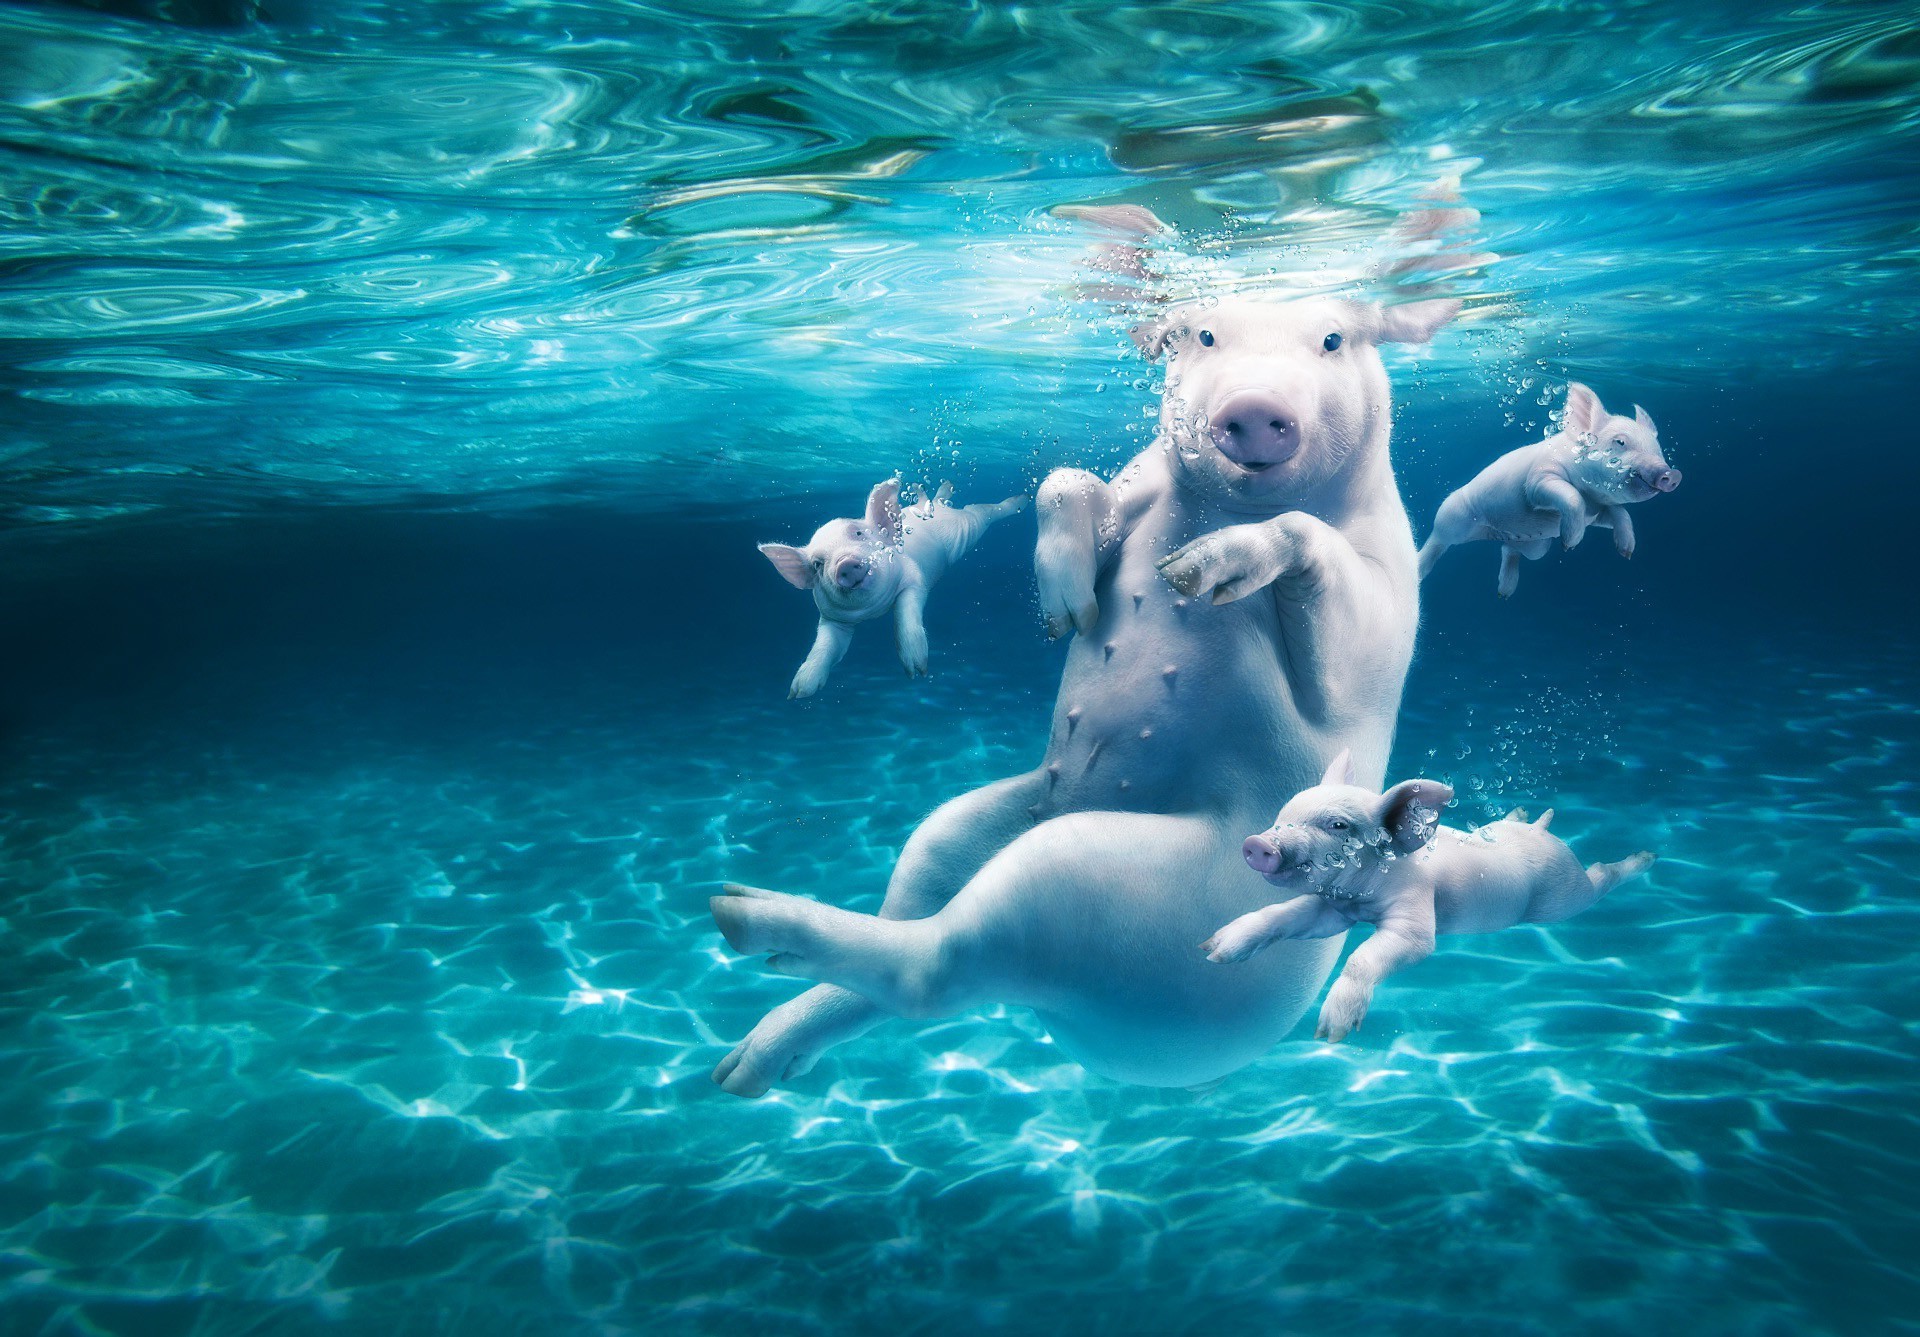 свиньи плавание подводный воды пловец отдых мокрый плавательный бассейн удовольствие дайвинг один водные виды спорта лето бассейн